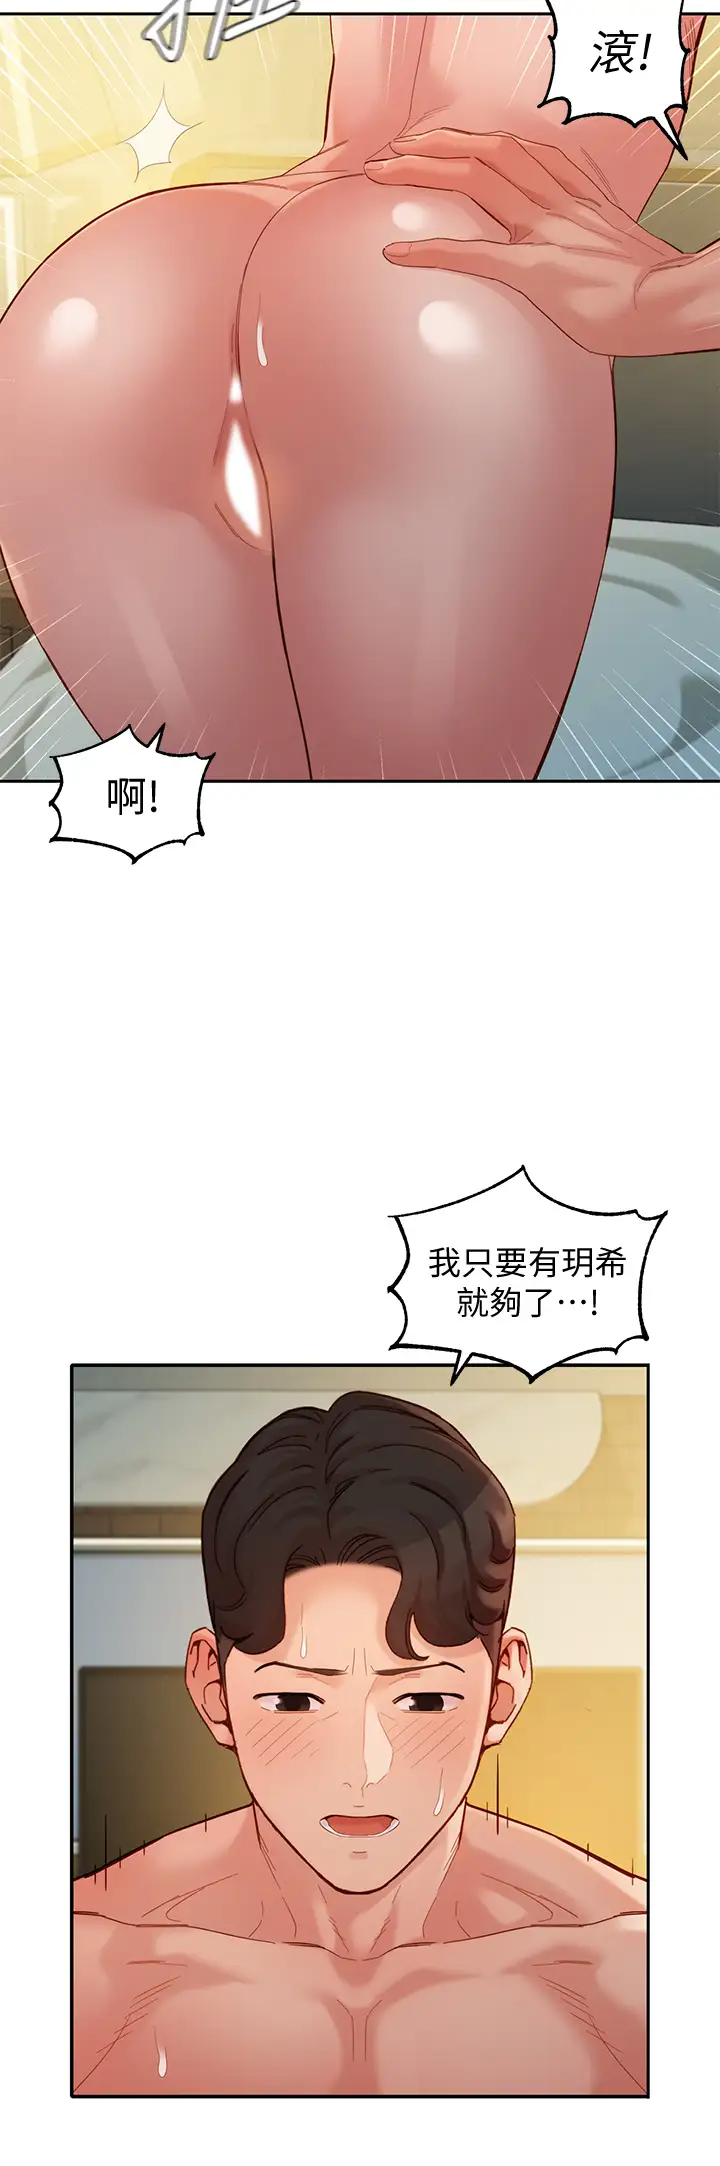 韩国污漫画 女神寫真 第52话淫靡的双飞体验 9